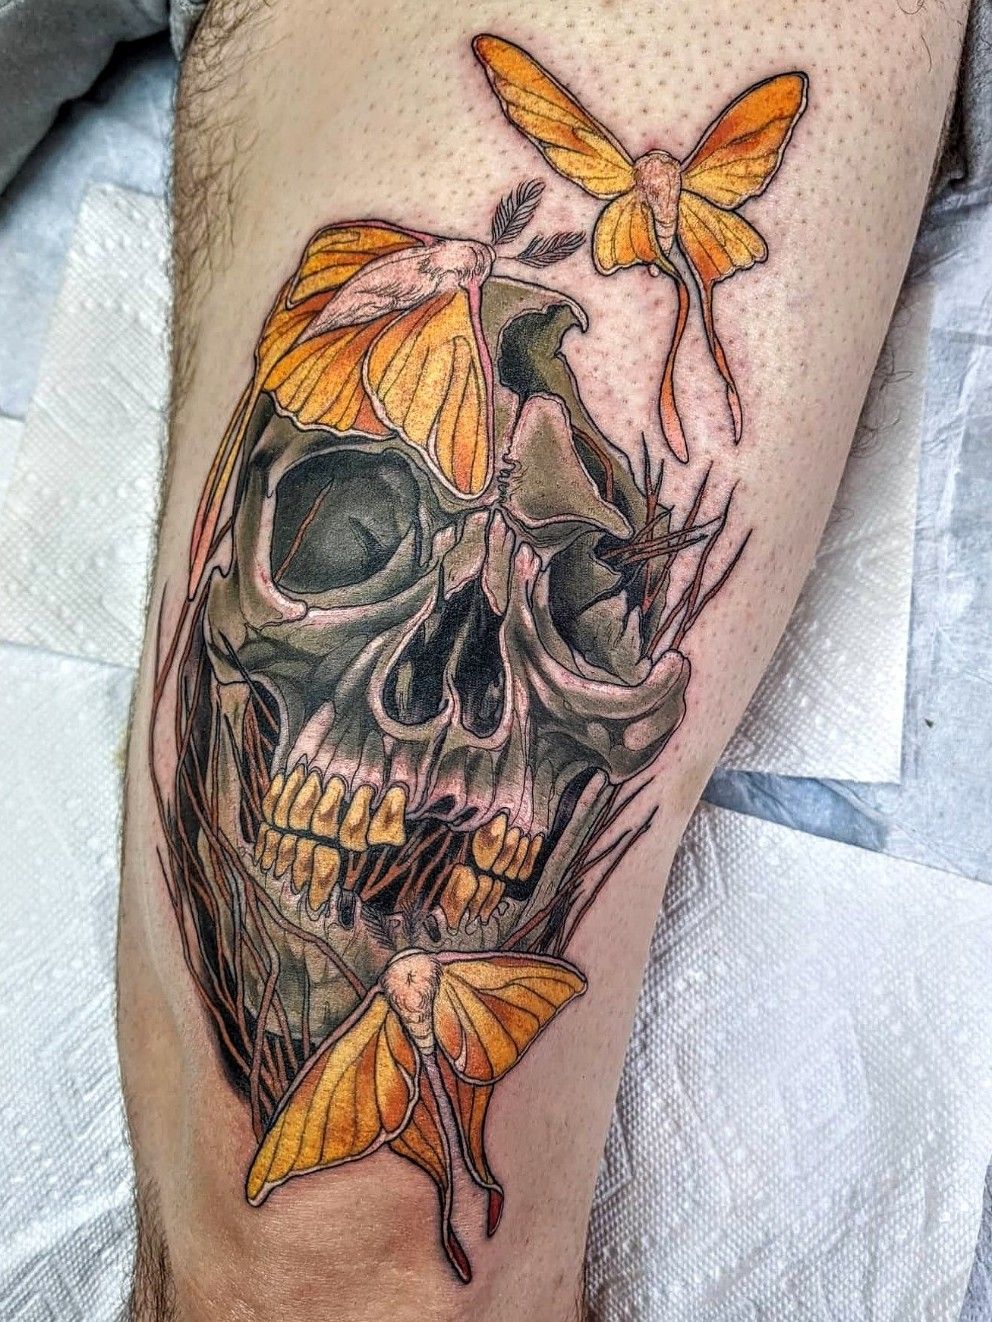 Broken Skull Tattoo by byzart on DeviantArt